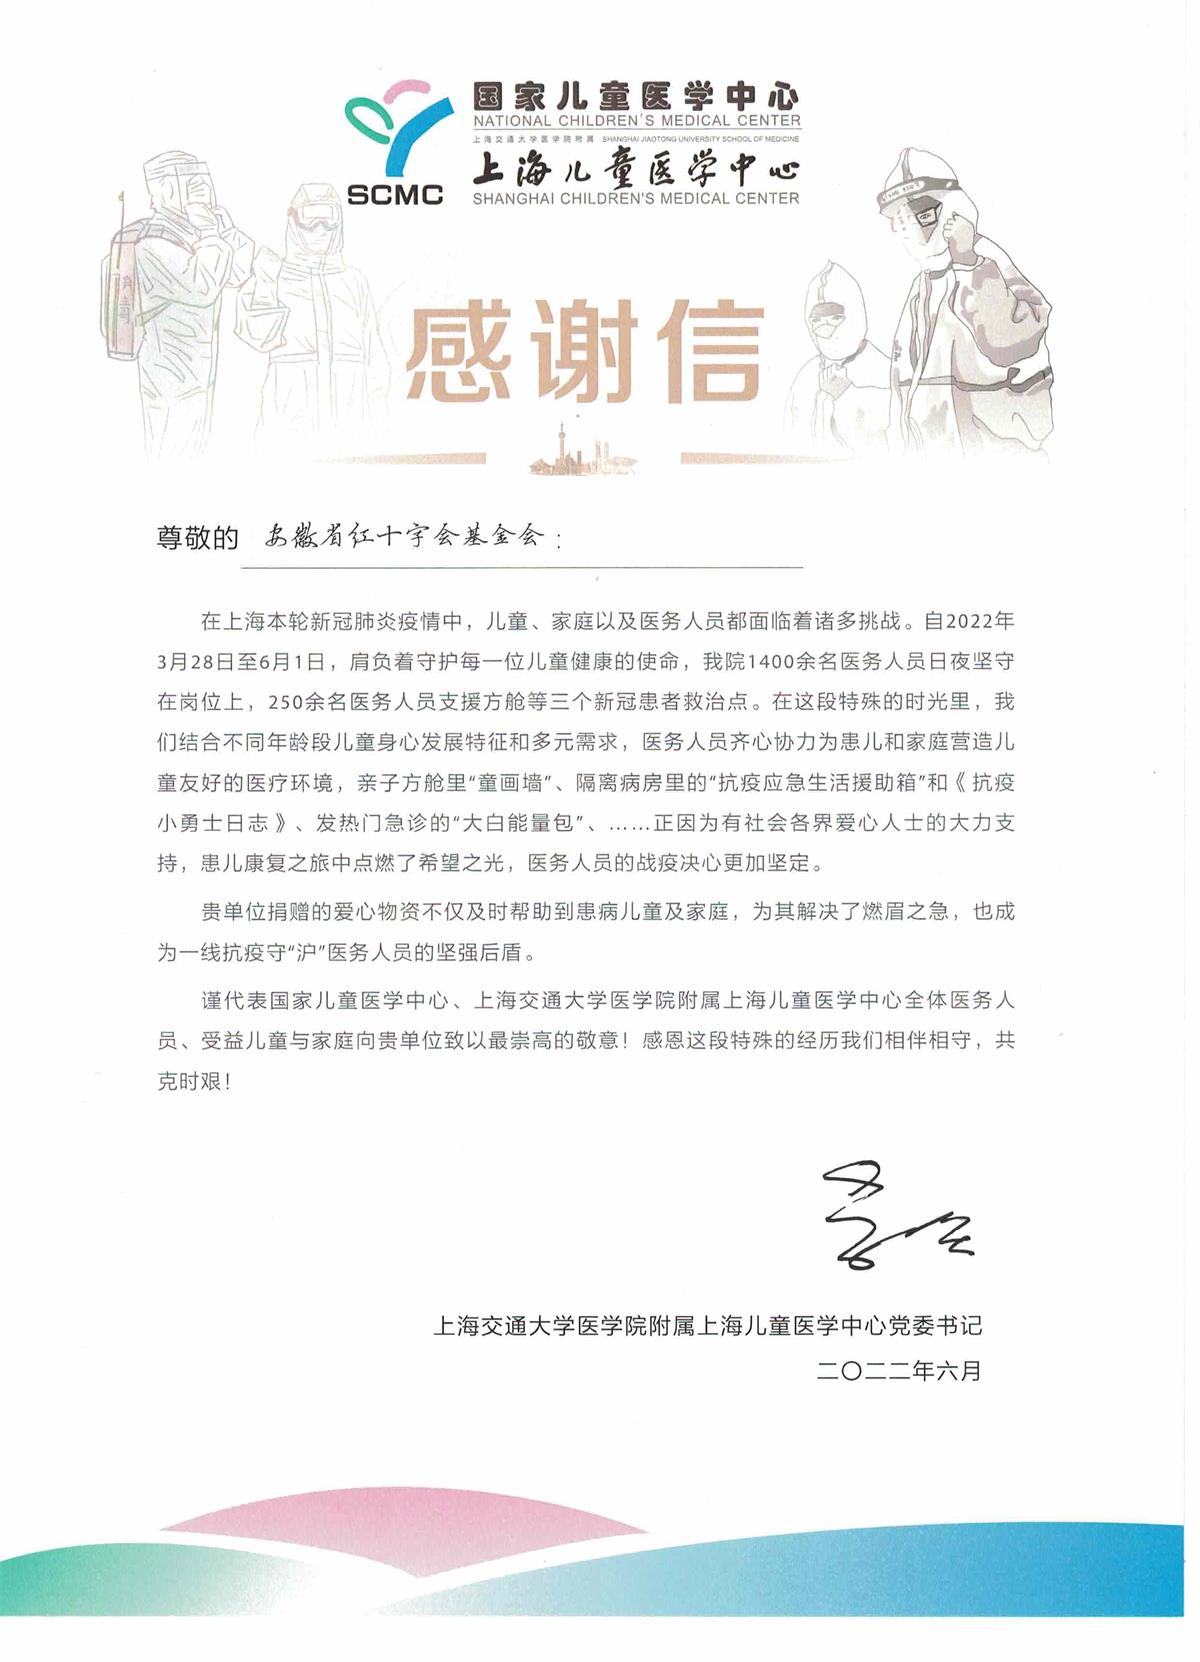 上海儿童医学中心对安徽红十字会的感谢信